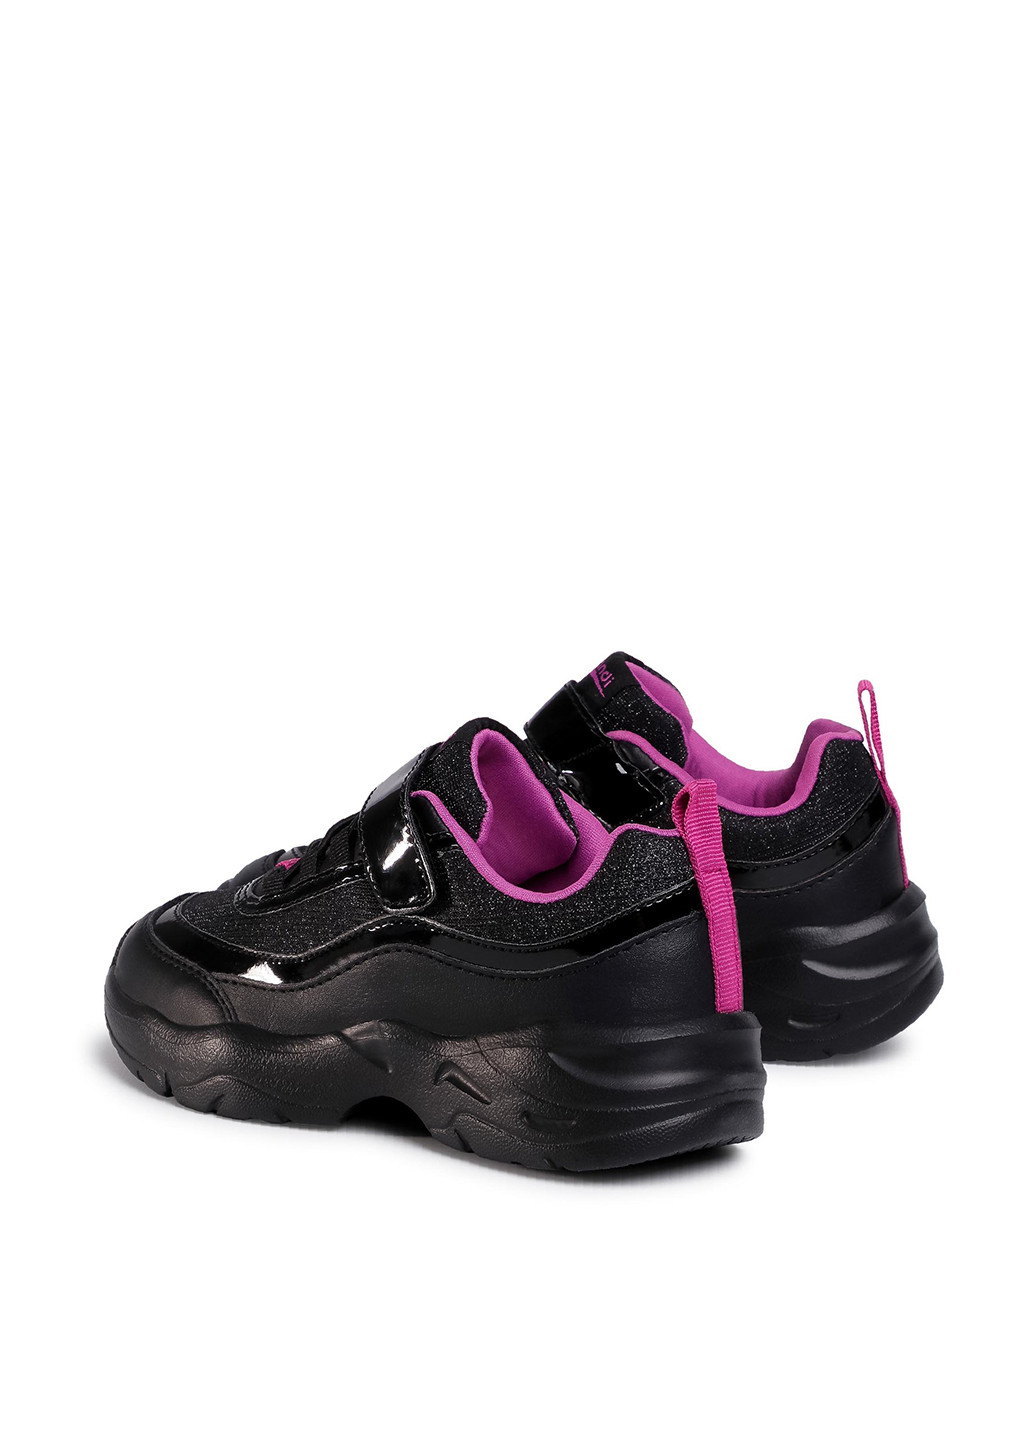 Черные демисезонные кросівки cp40-9212y Sprandi